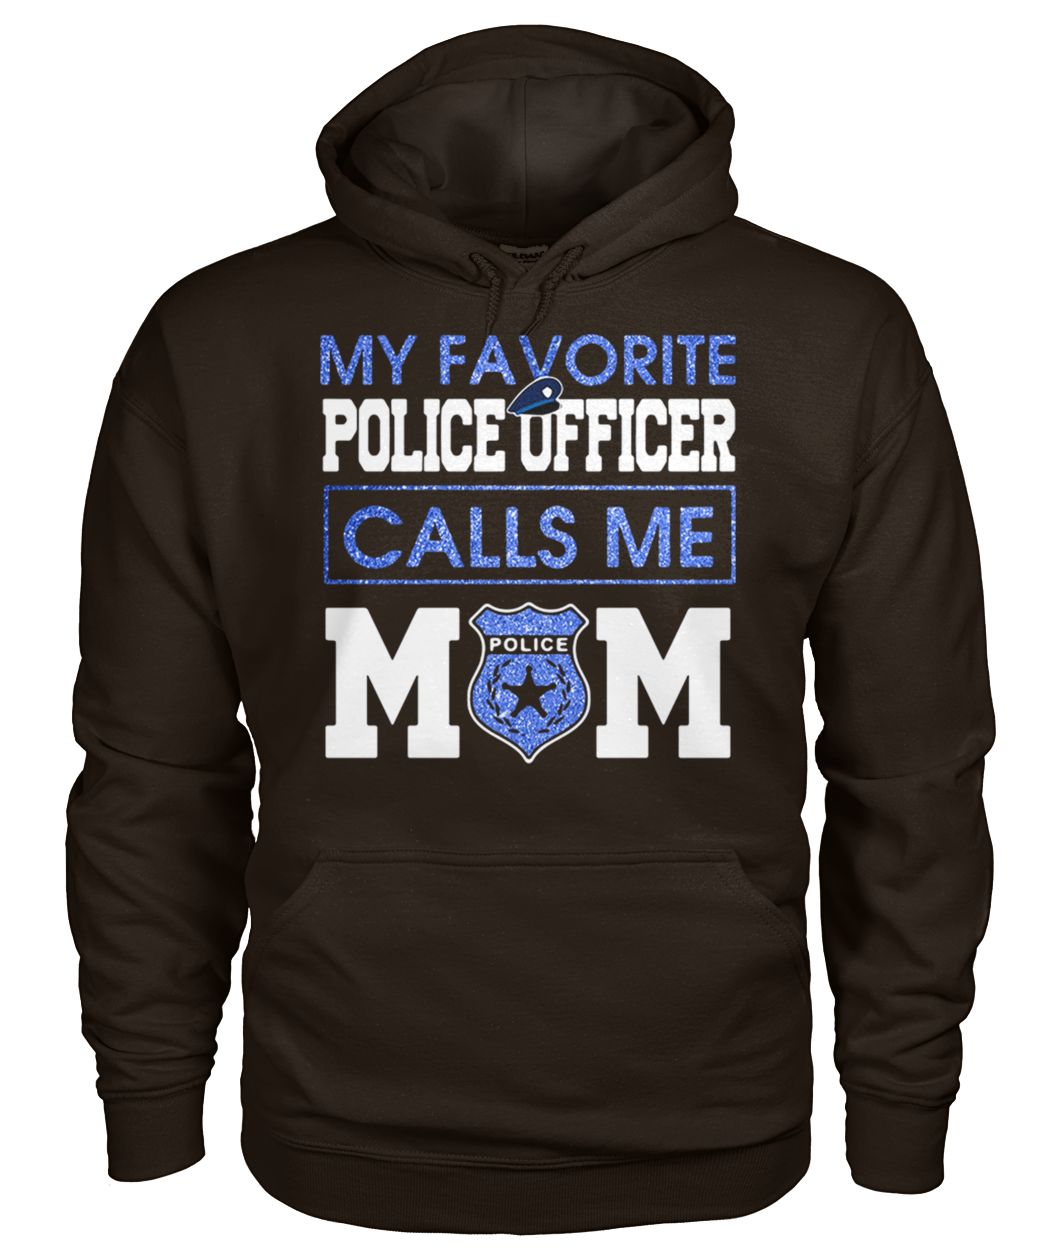 My favorite police officer calls me mom gildan hoodie